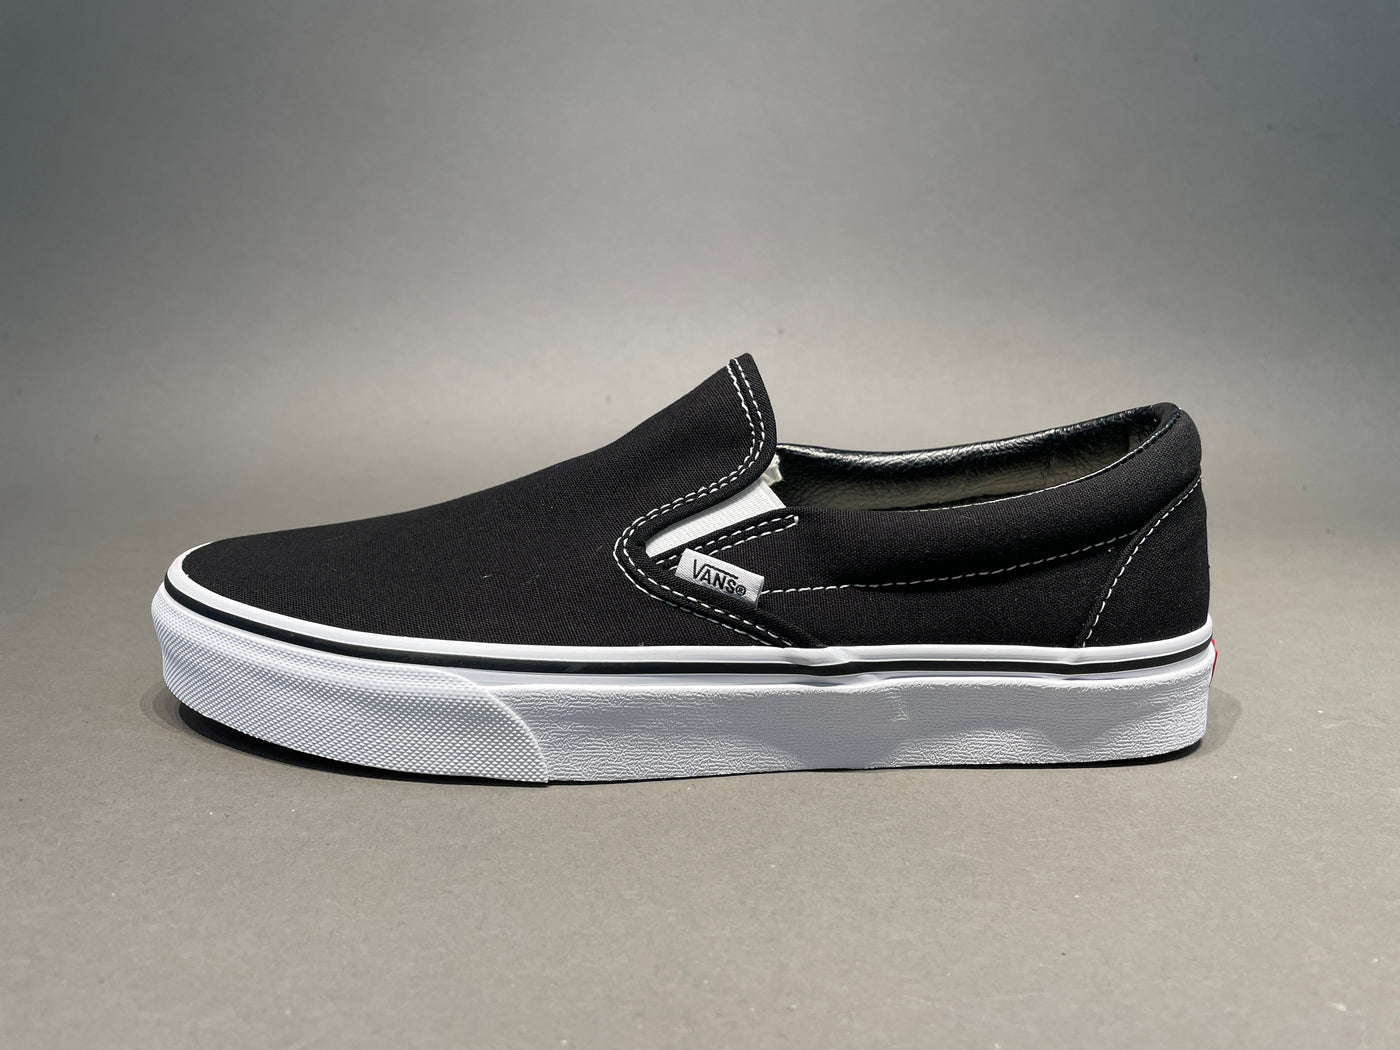 Vans Classic Slip-On black sneakers | ASOS